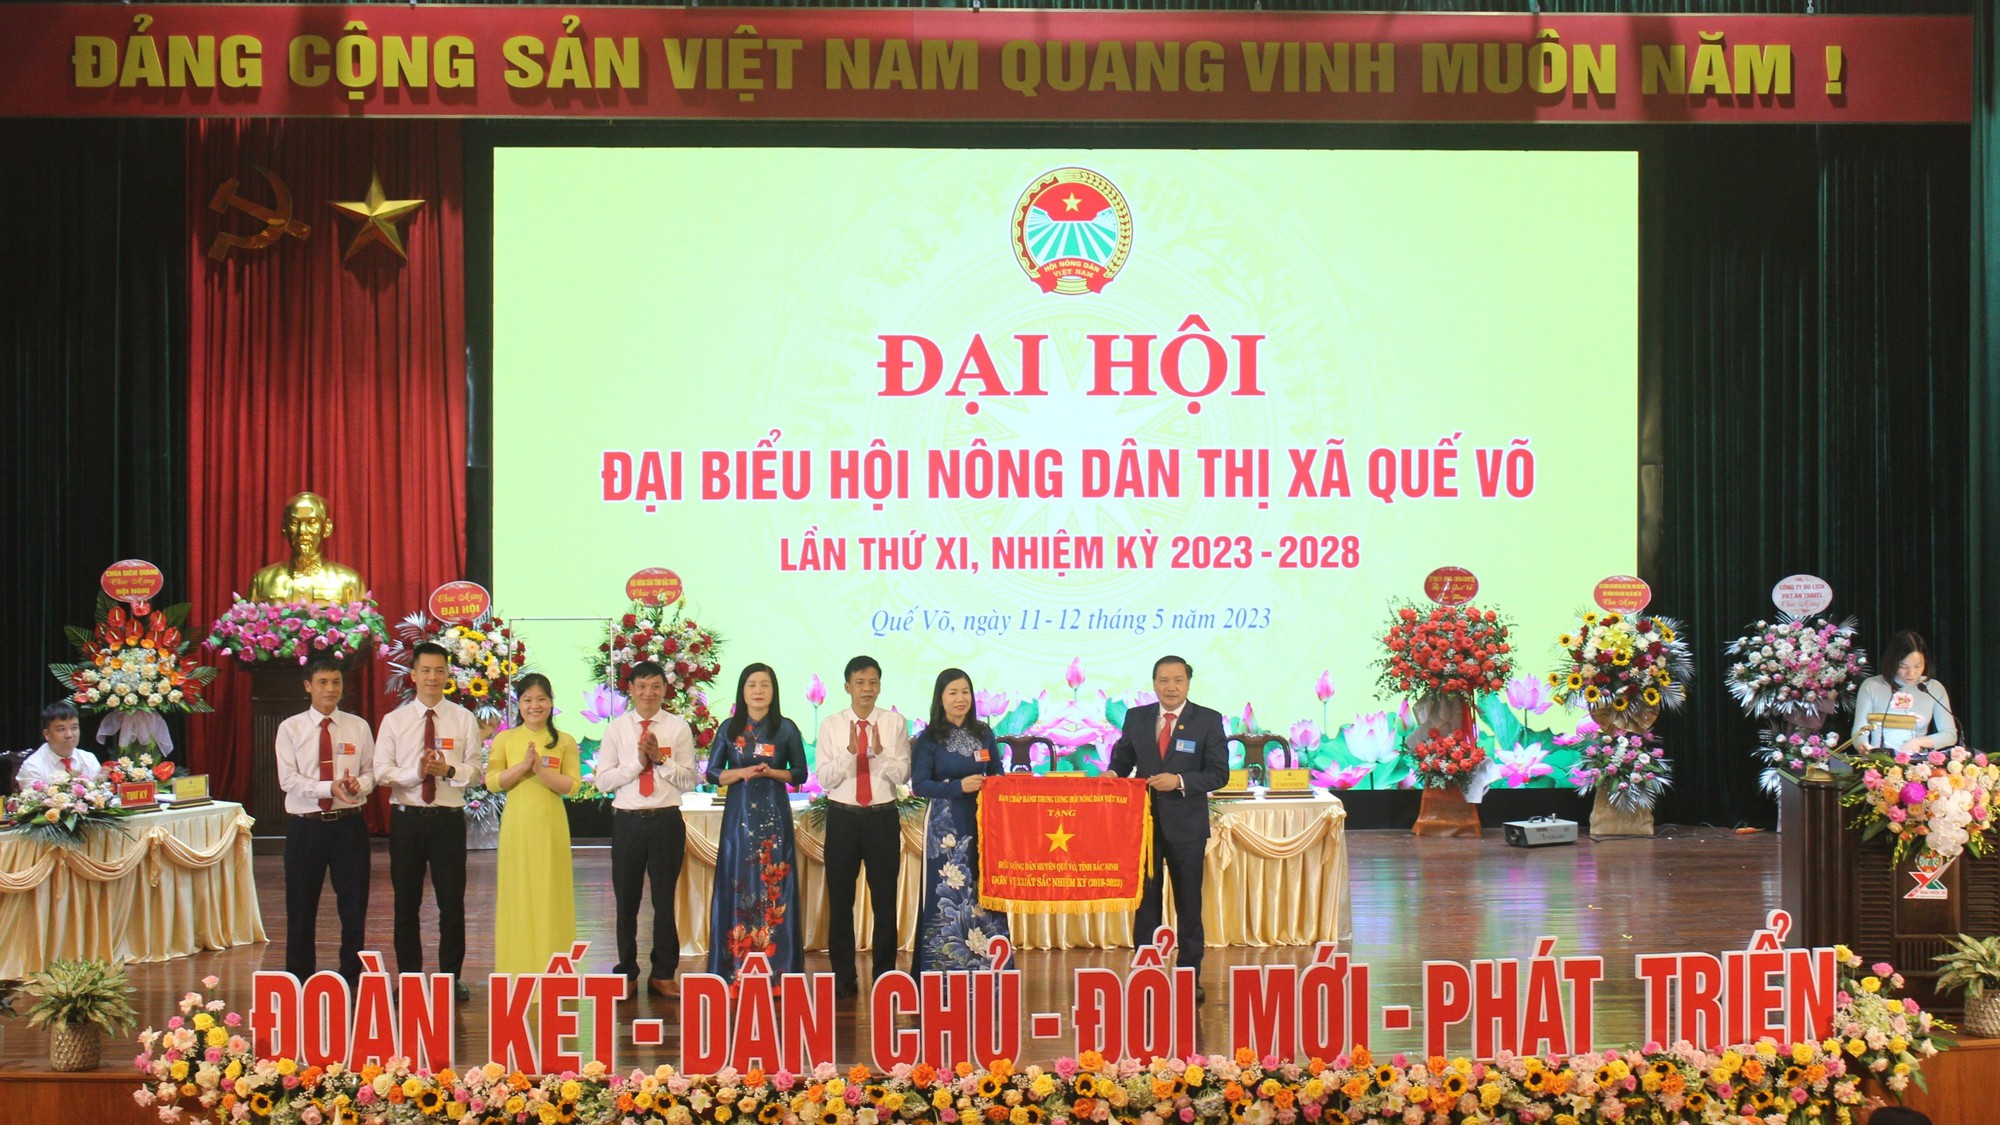 Bắc Ninh: Đại hội Hội Nông dân thị xã Quế Võ bầu 29 đồng chí tham gia Ban Chấp hành - Ảnh 1.